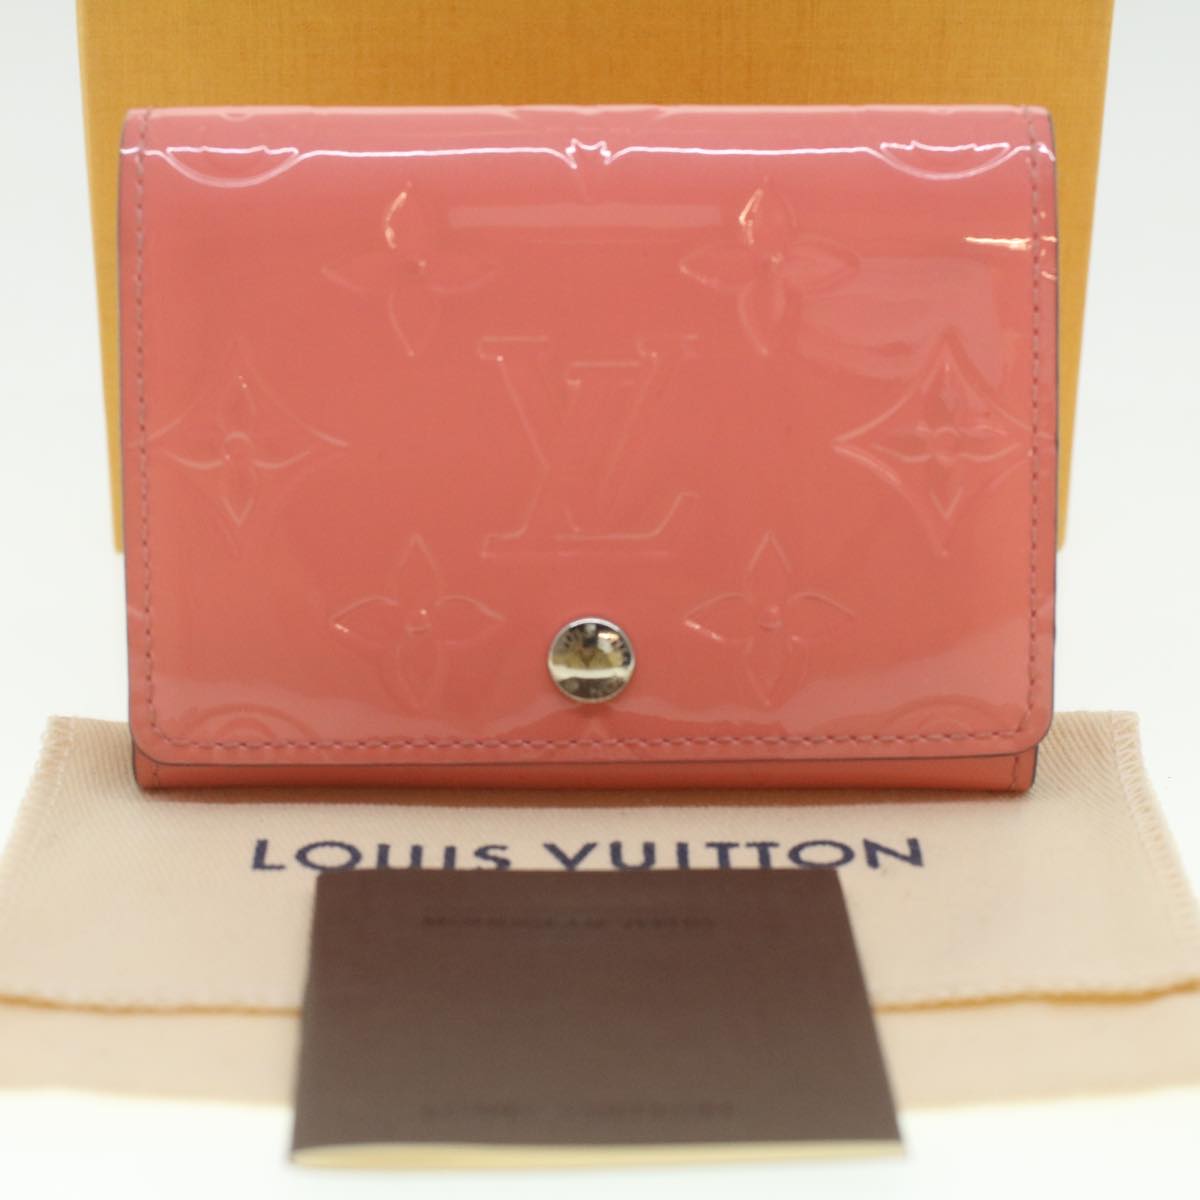 LOUIS VUITTON Vernis Amberop Cartes de Visit Card Case Pink M90936 LV Auth 37343